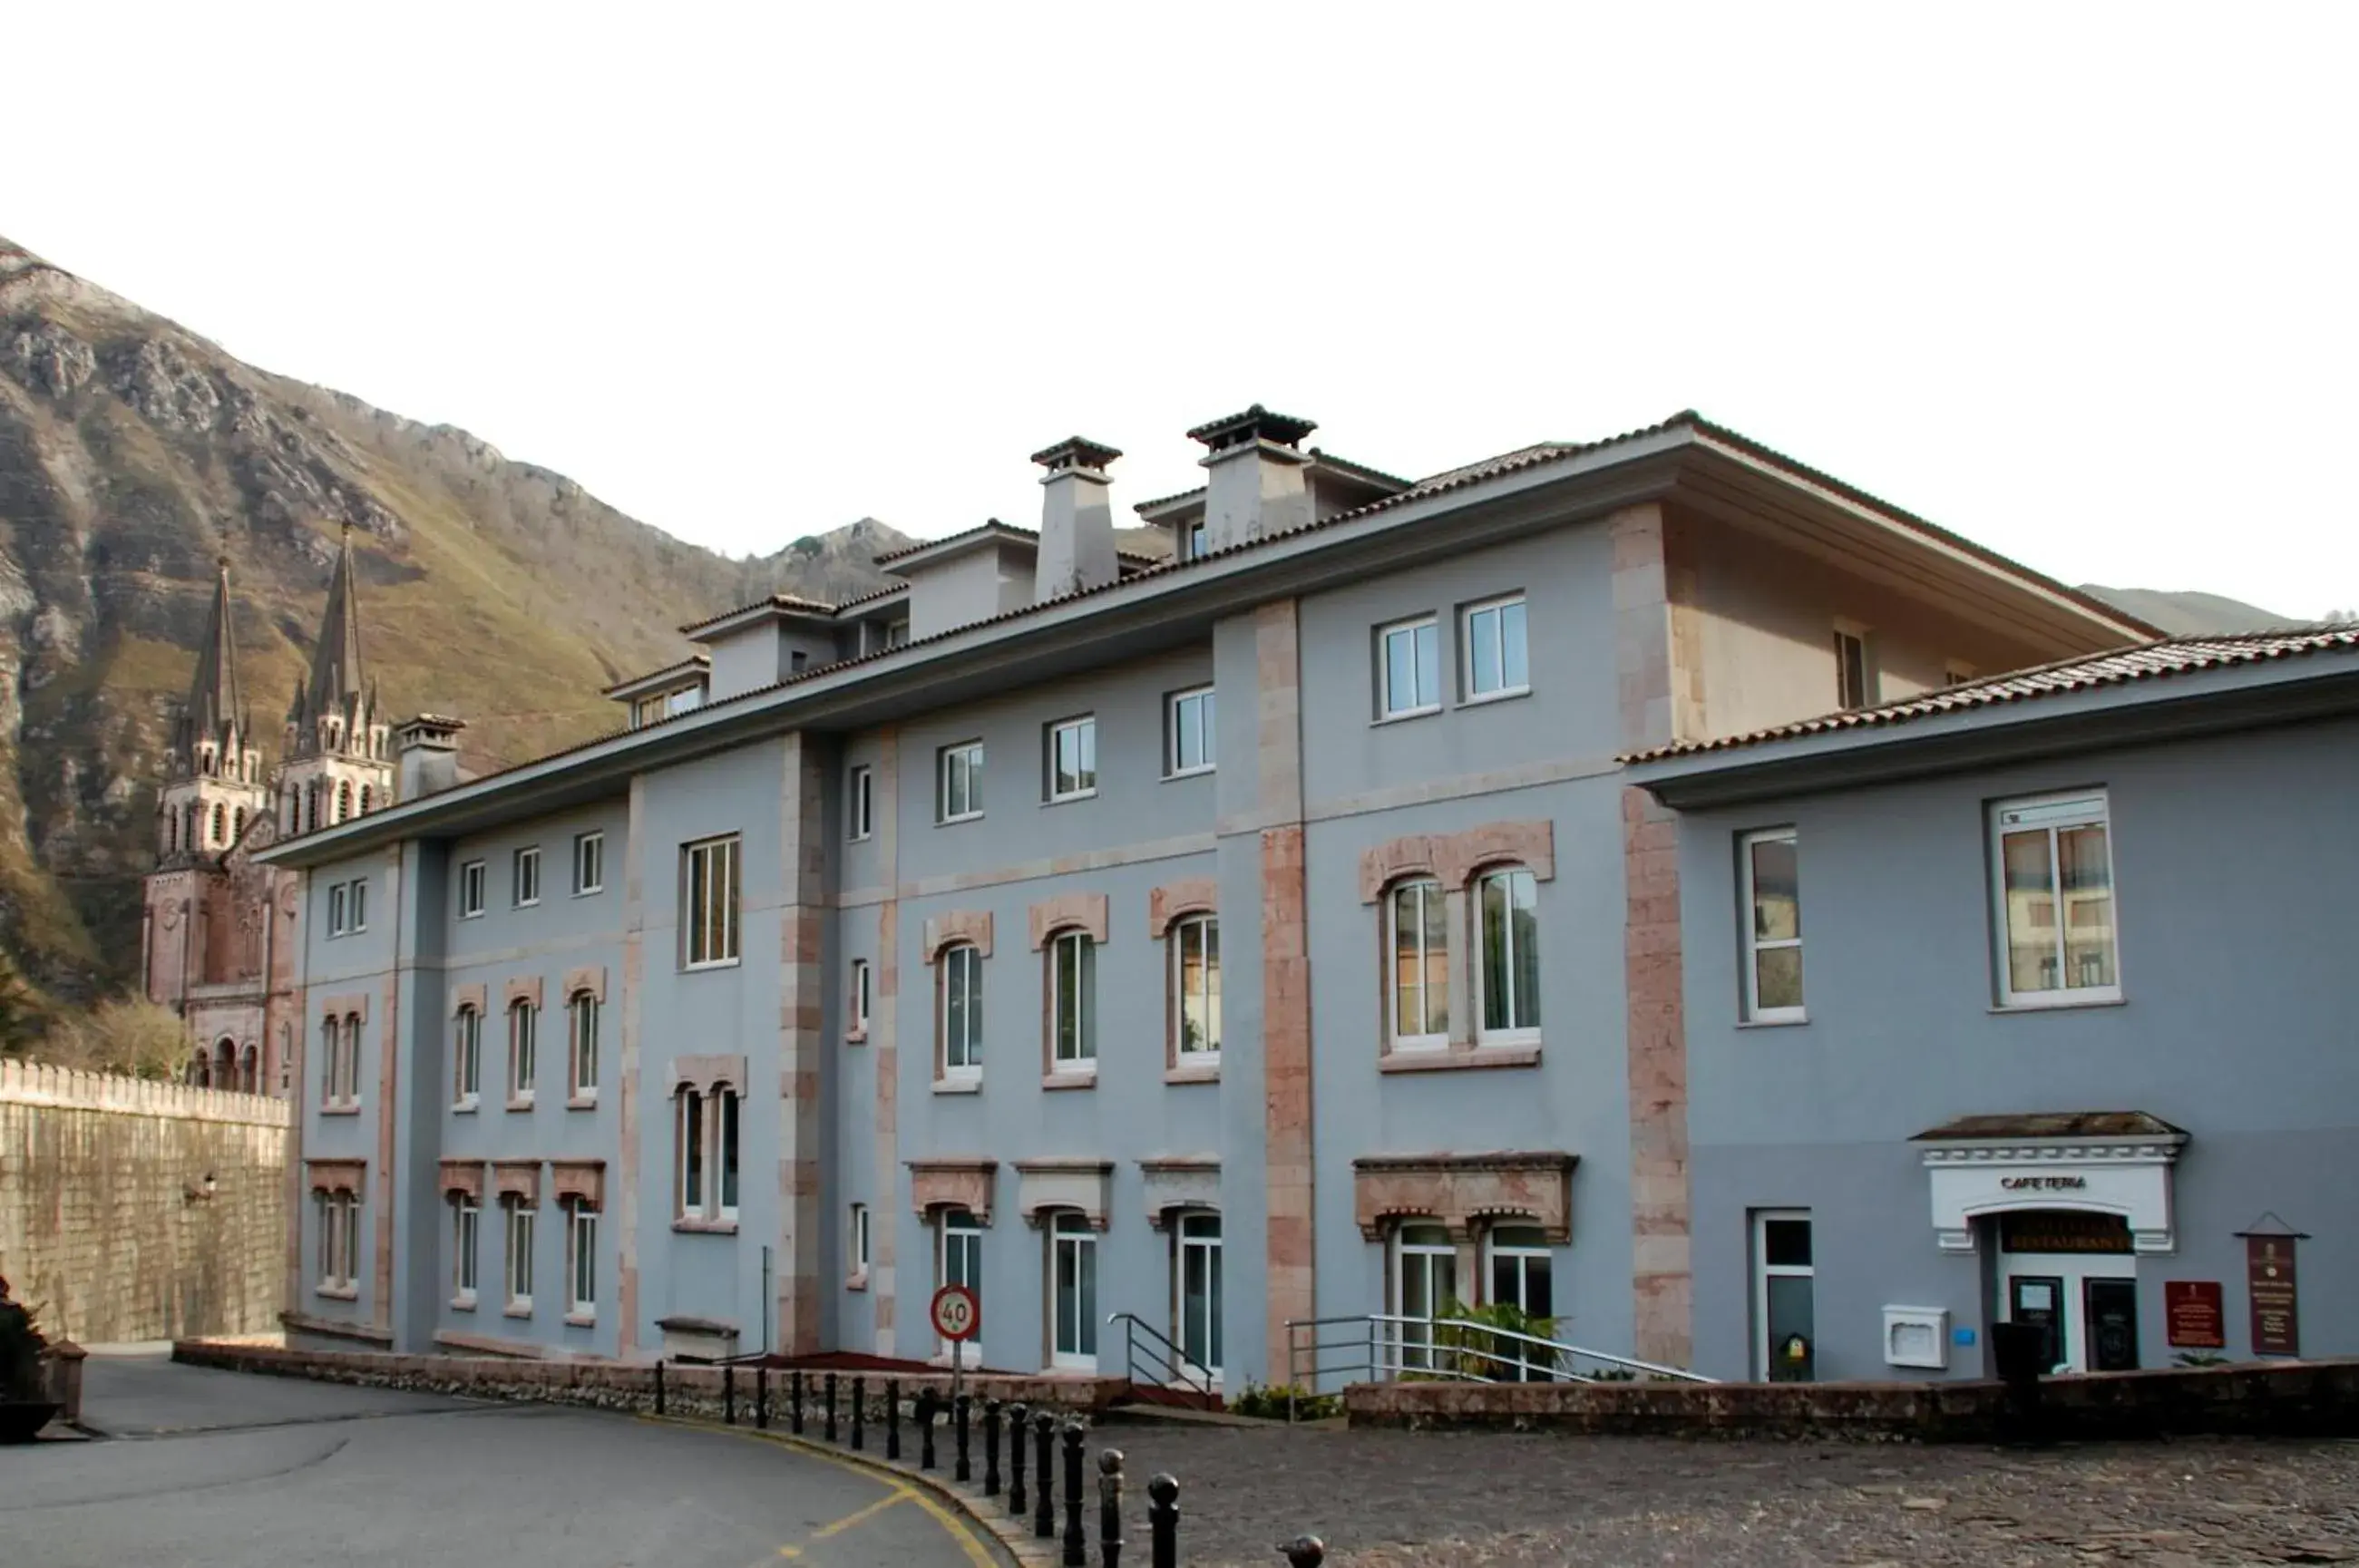 Facade/entrance, Property Building in Arcea Gran Hotel Pelayo